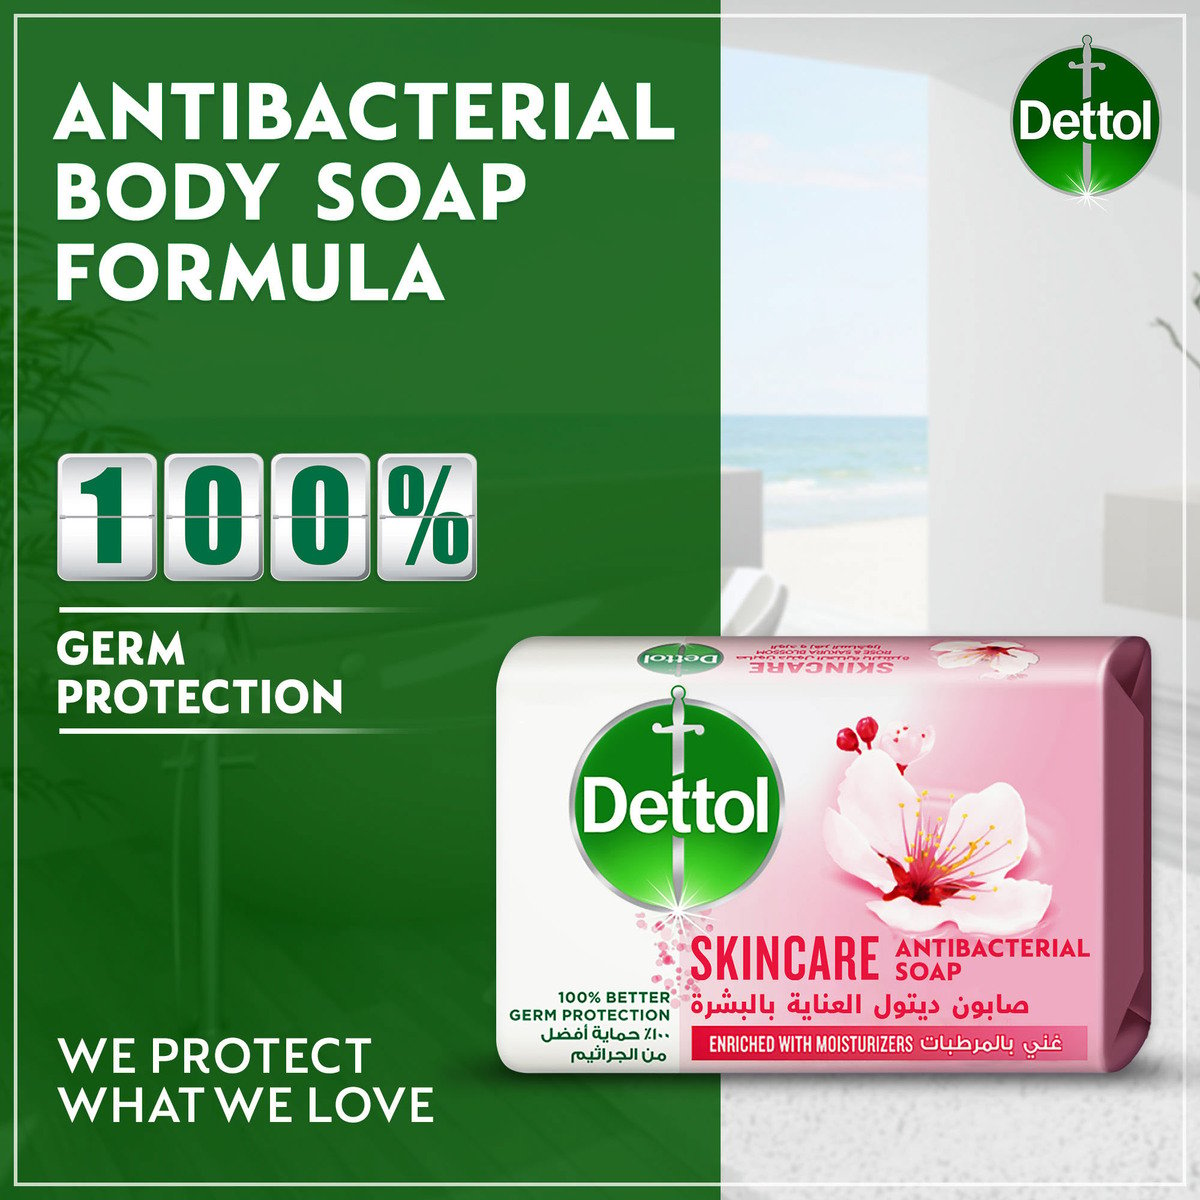 Dettol Skincare Anti-Bacterial Bathing Soap Bar Rose & Sakura Blossom Fragrance 165 g